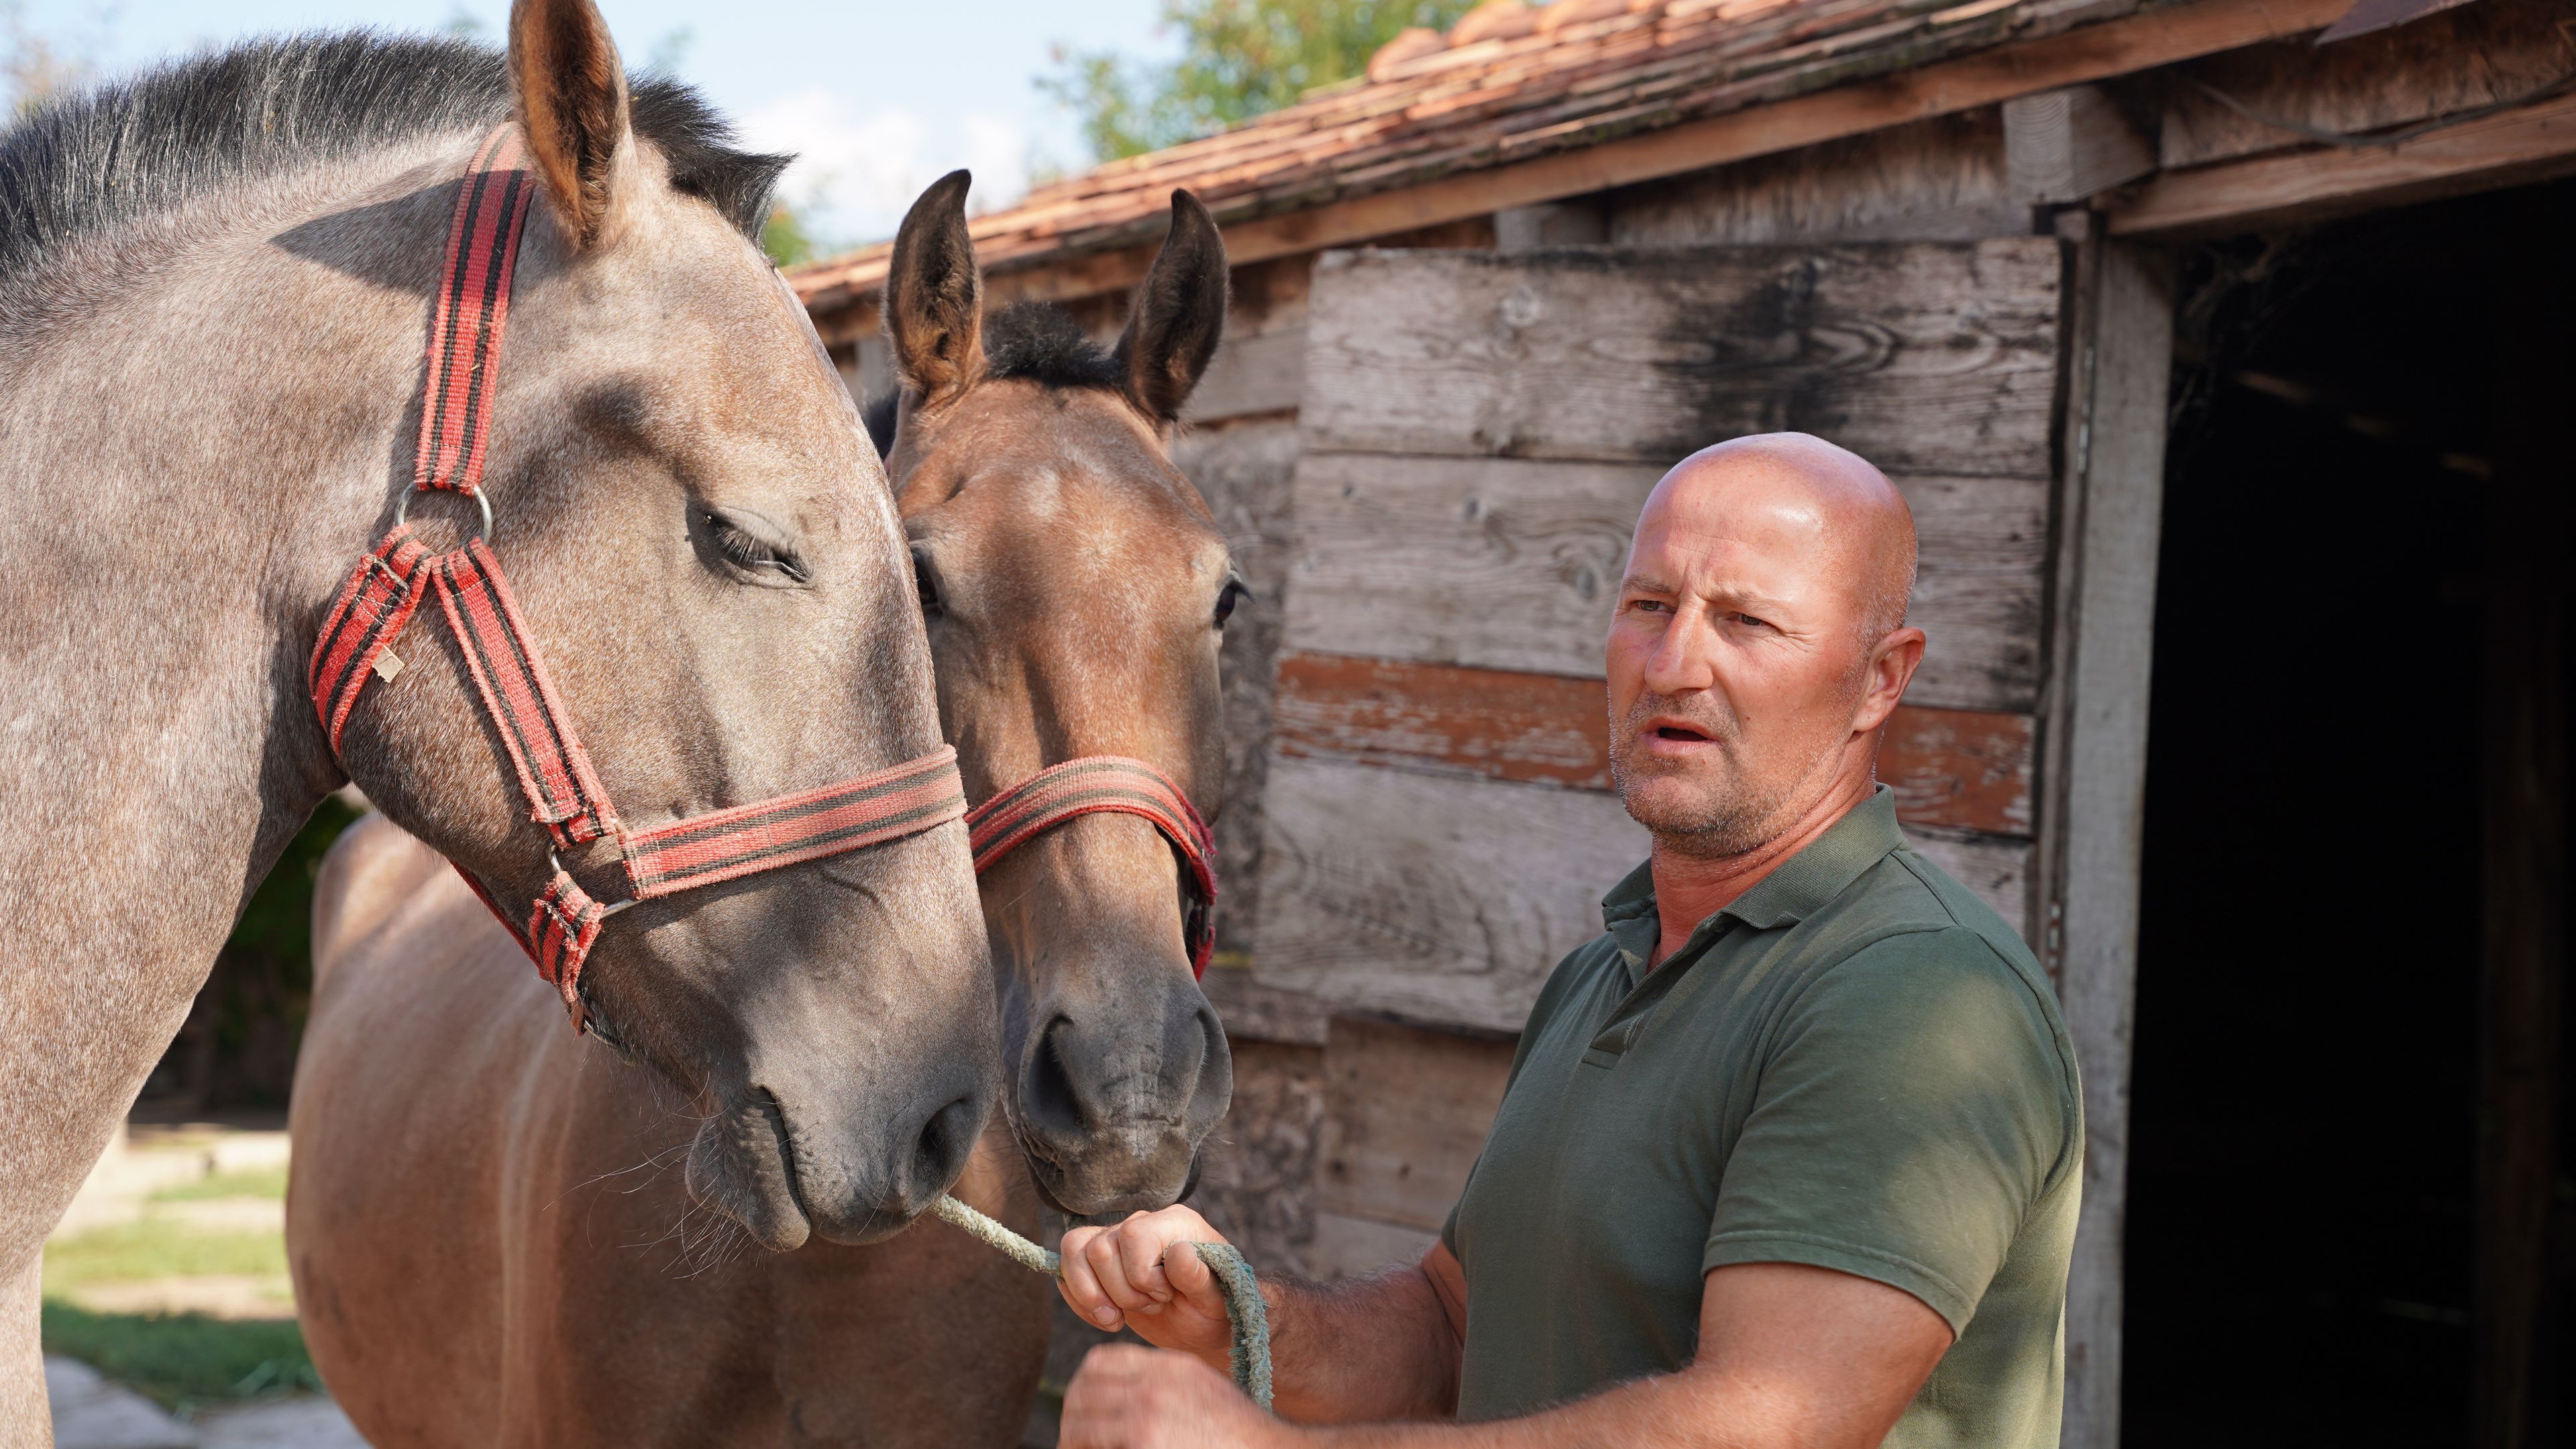 A Fehérvár jelenlegi játékosaira nem kíváncsi, sokkal nagyobb örömét leli lovai gondozásában és a fogathajtásban. (Fotó: Kaiser Tamás)